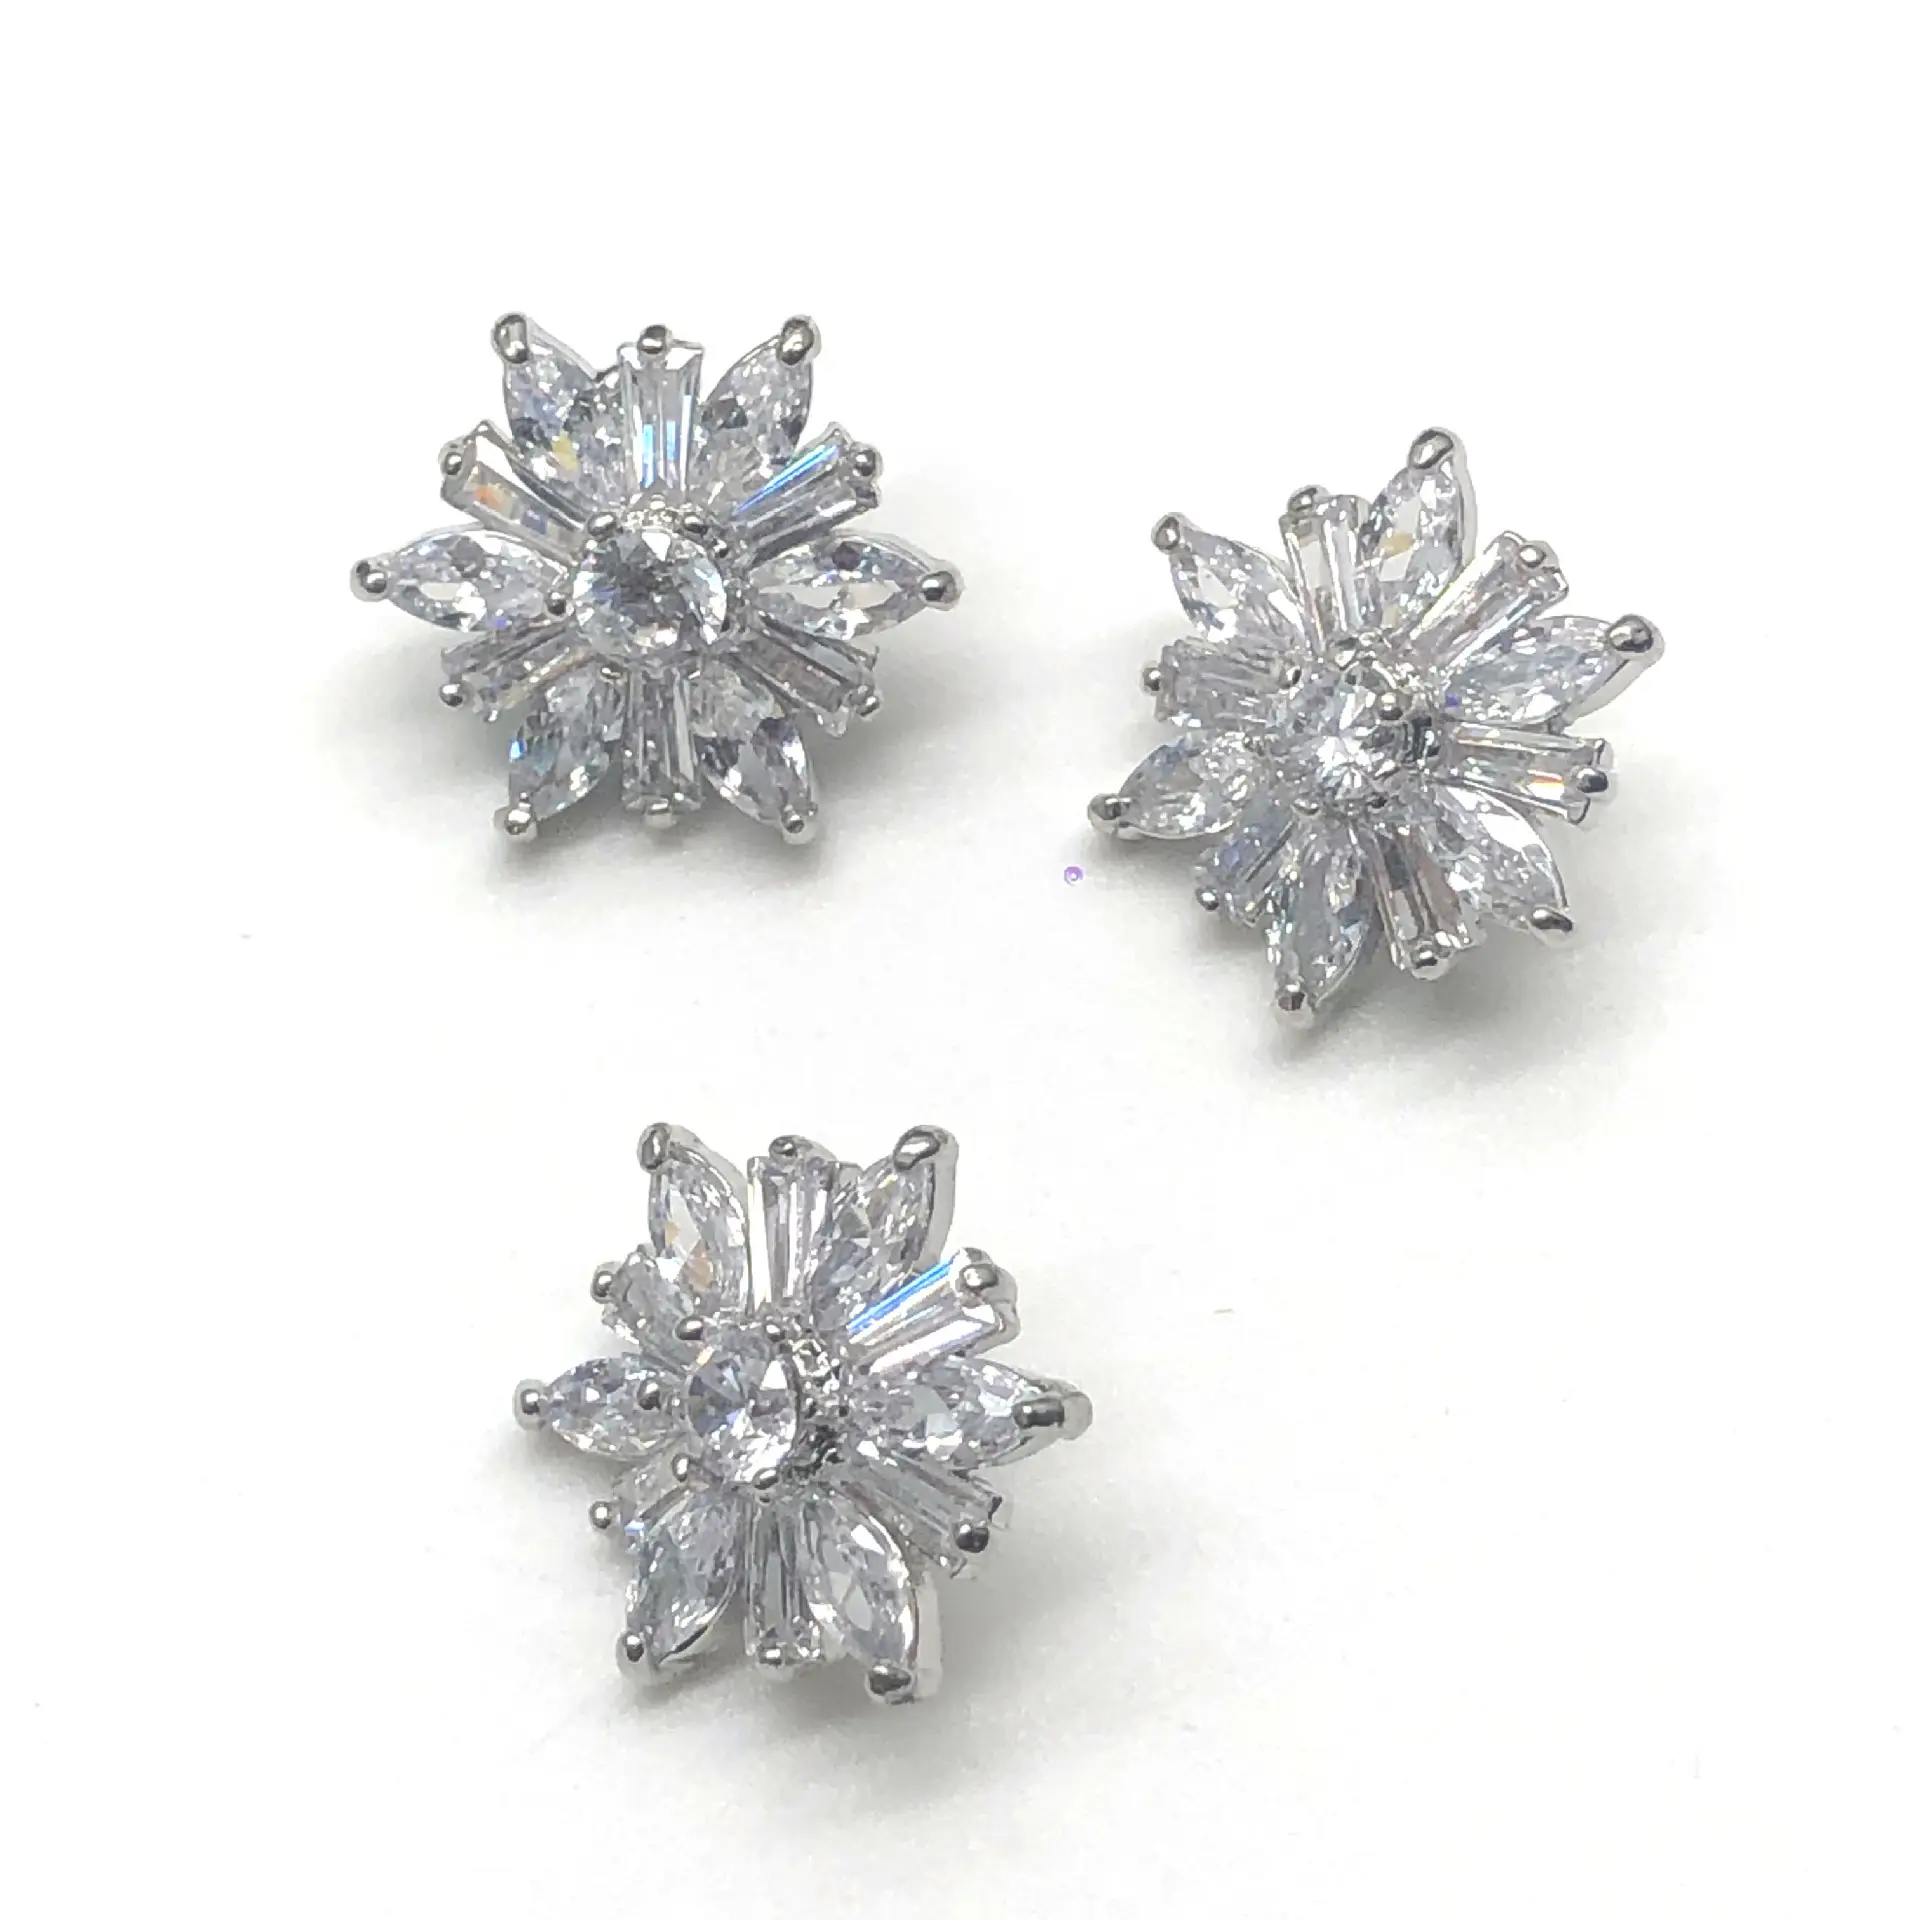 Kristal Rhinestone elmas ayçiçeği bezemeler ZirconButtons dikmek düğmeleri Diy dekorasyon için giysi konfeksiyon giyim